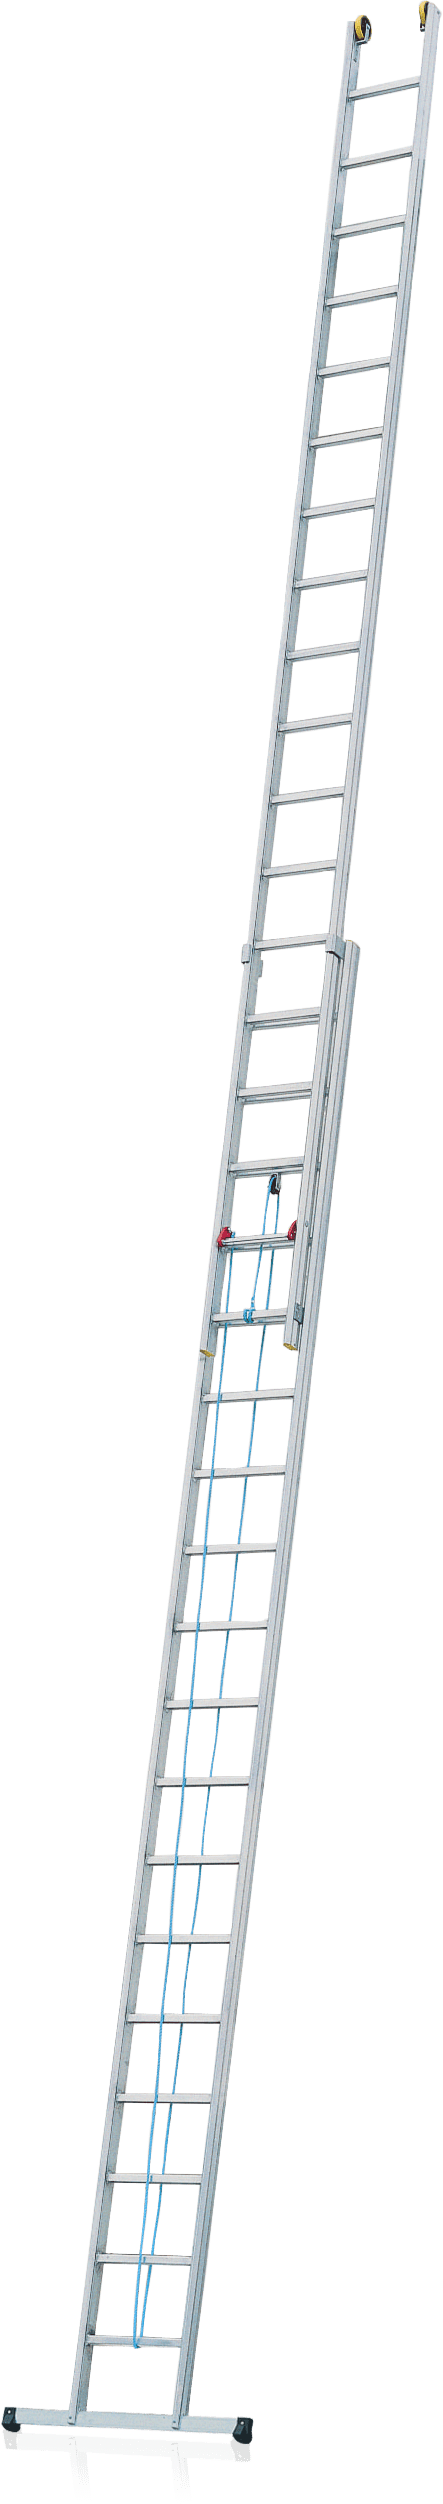 dvojdielny výsuvný rebrík 56 s lanoťahom